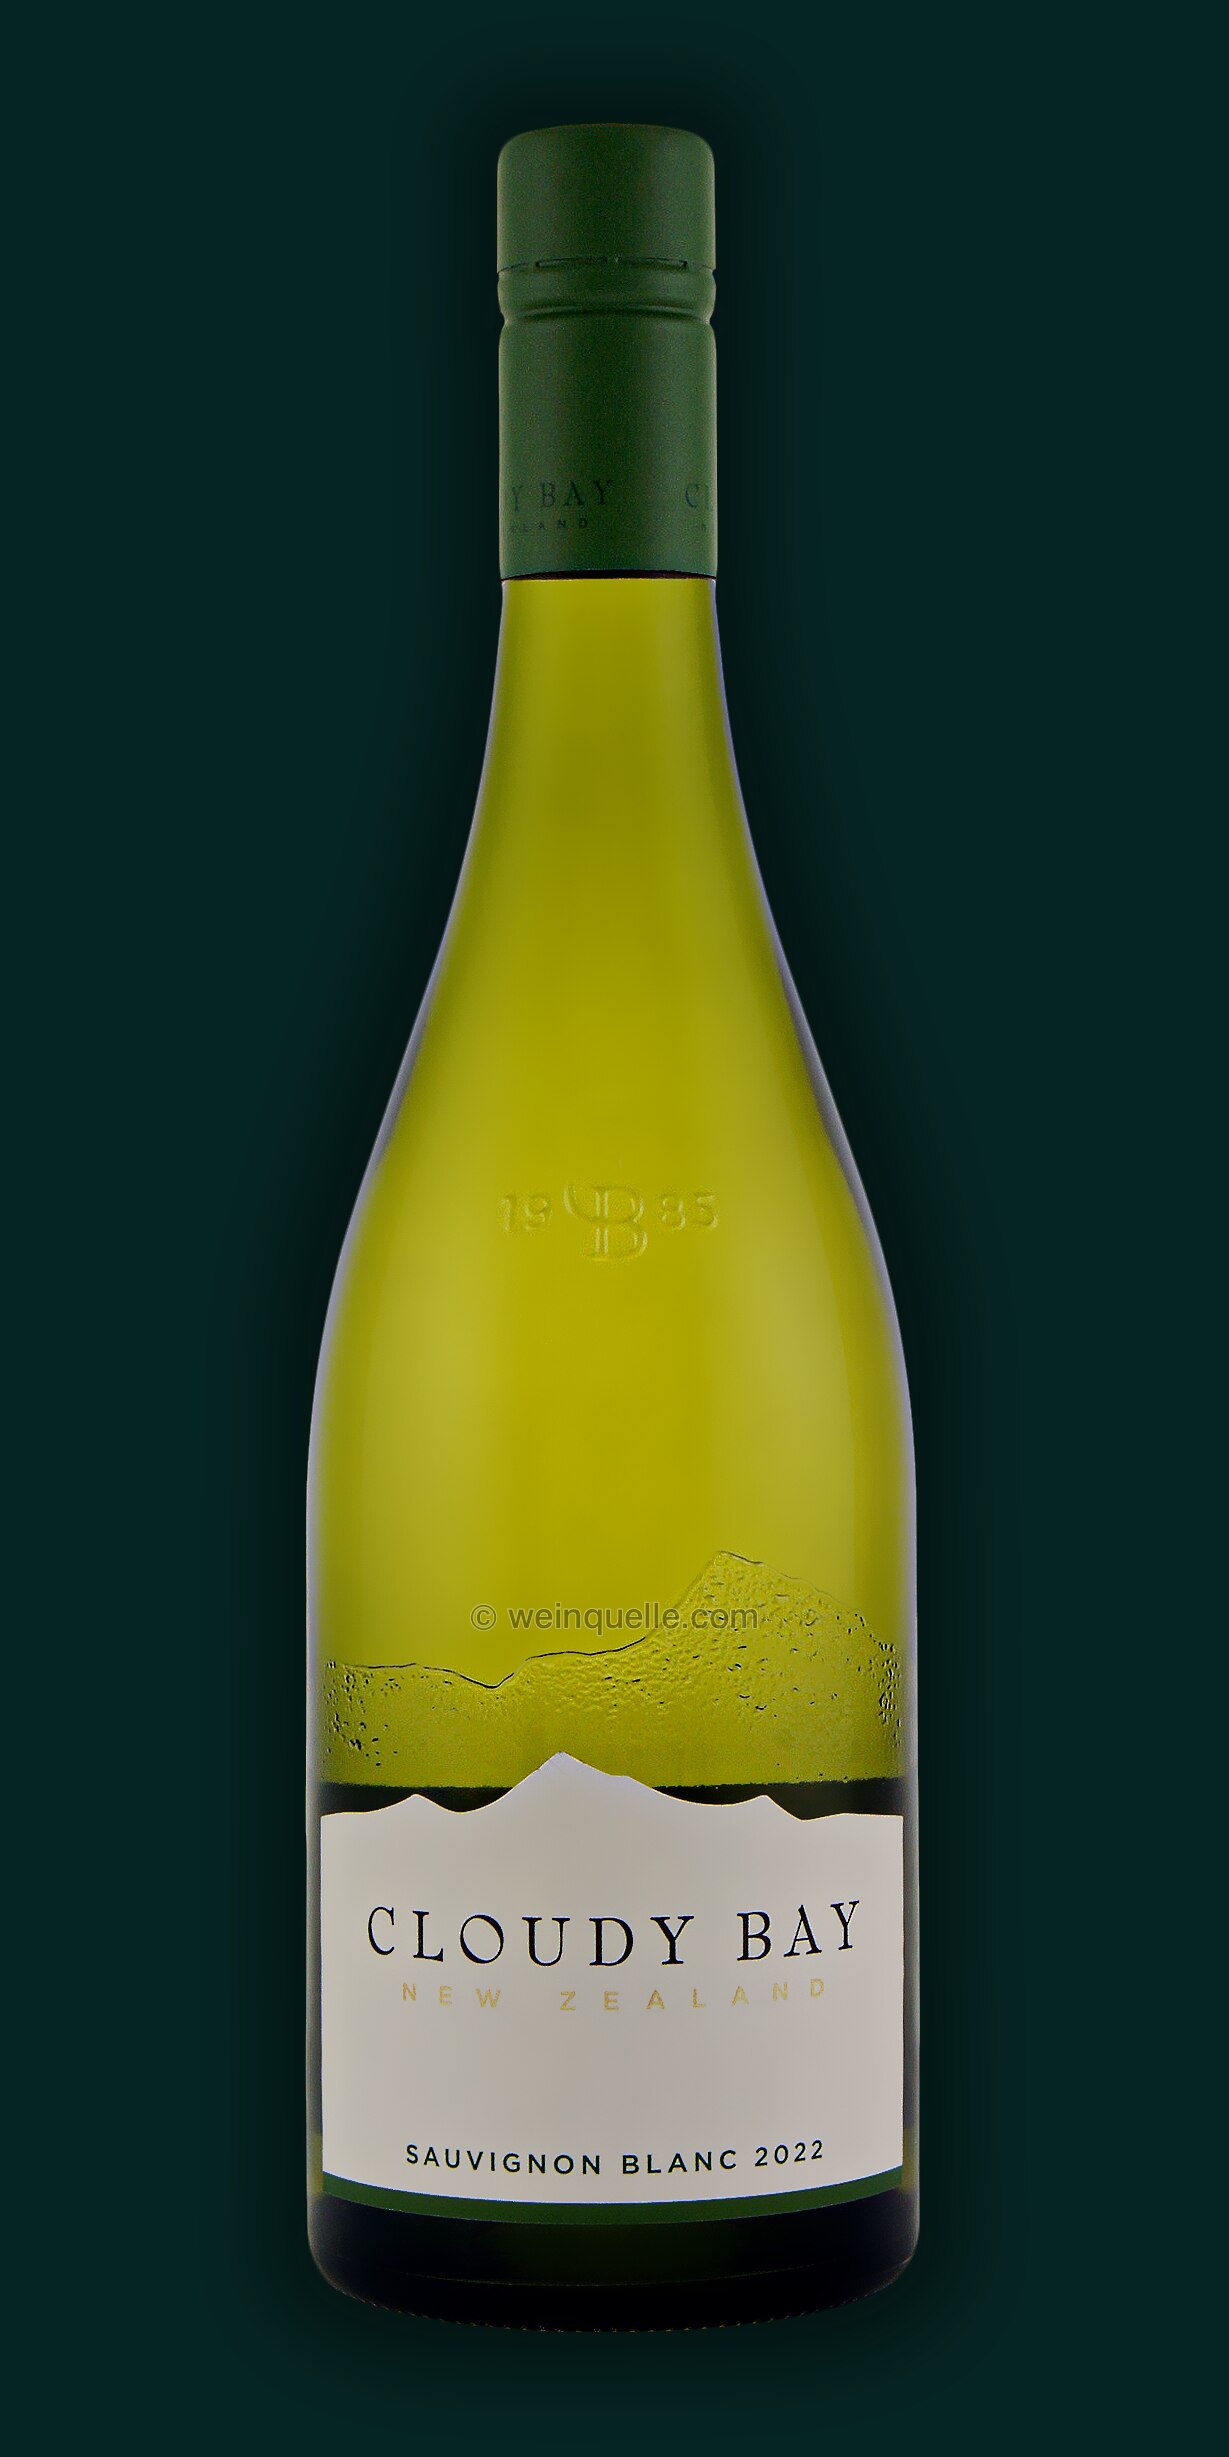 Bay € Sauvignon - Weinquelle Lühmann blanc, Cloudy 28,95